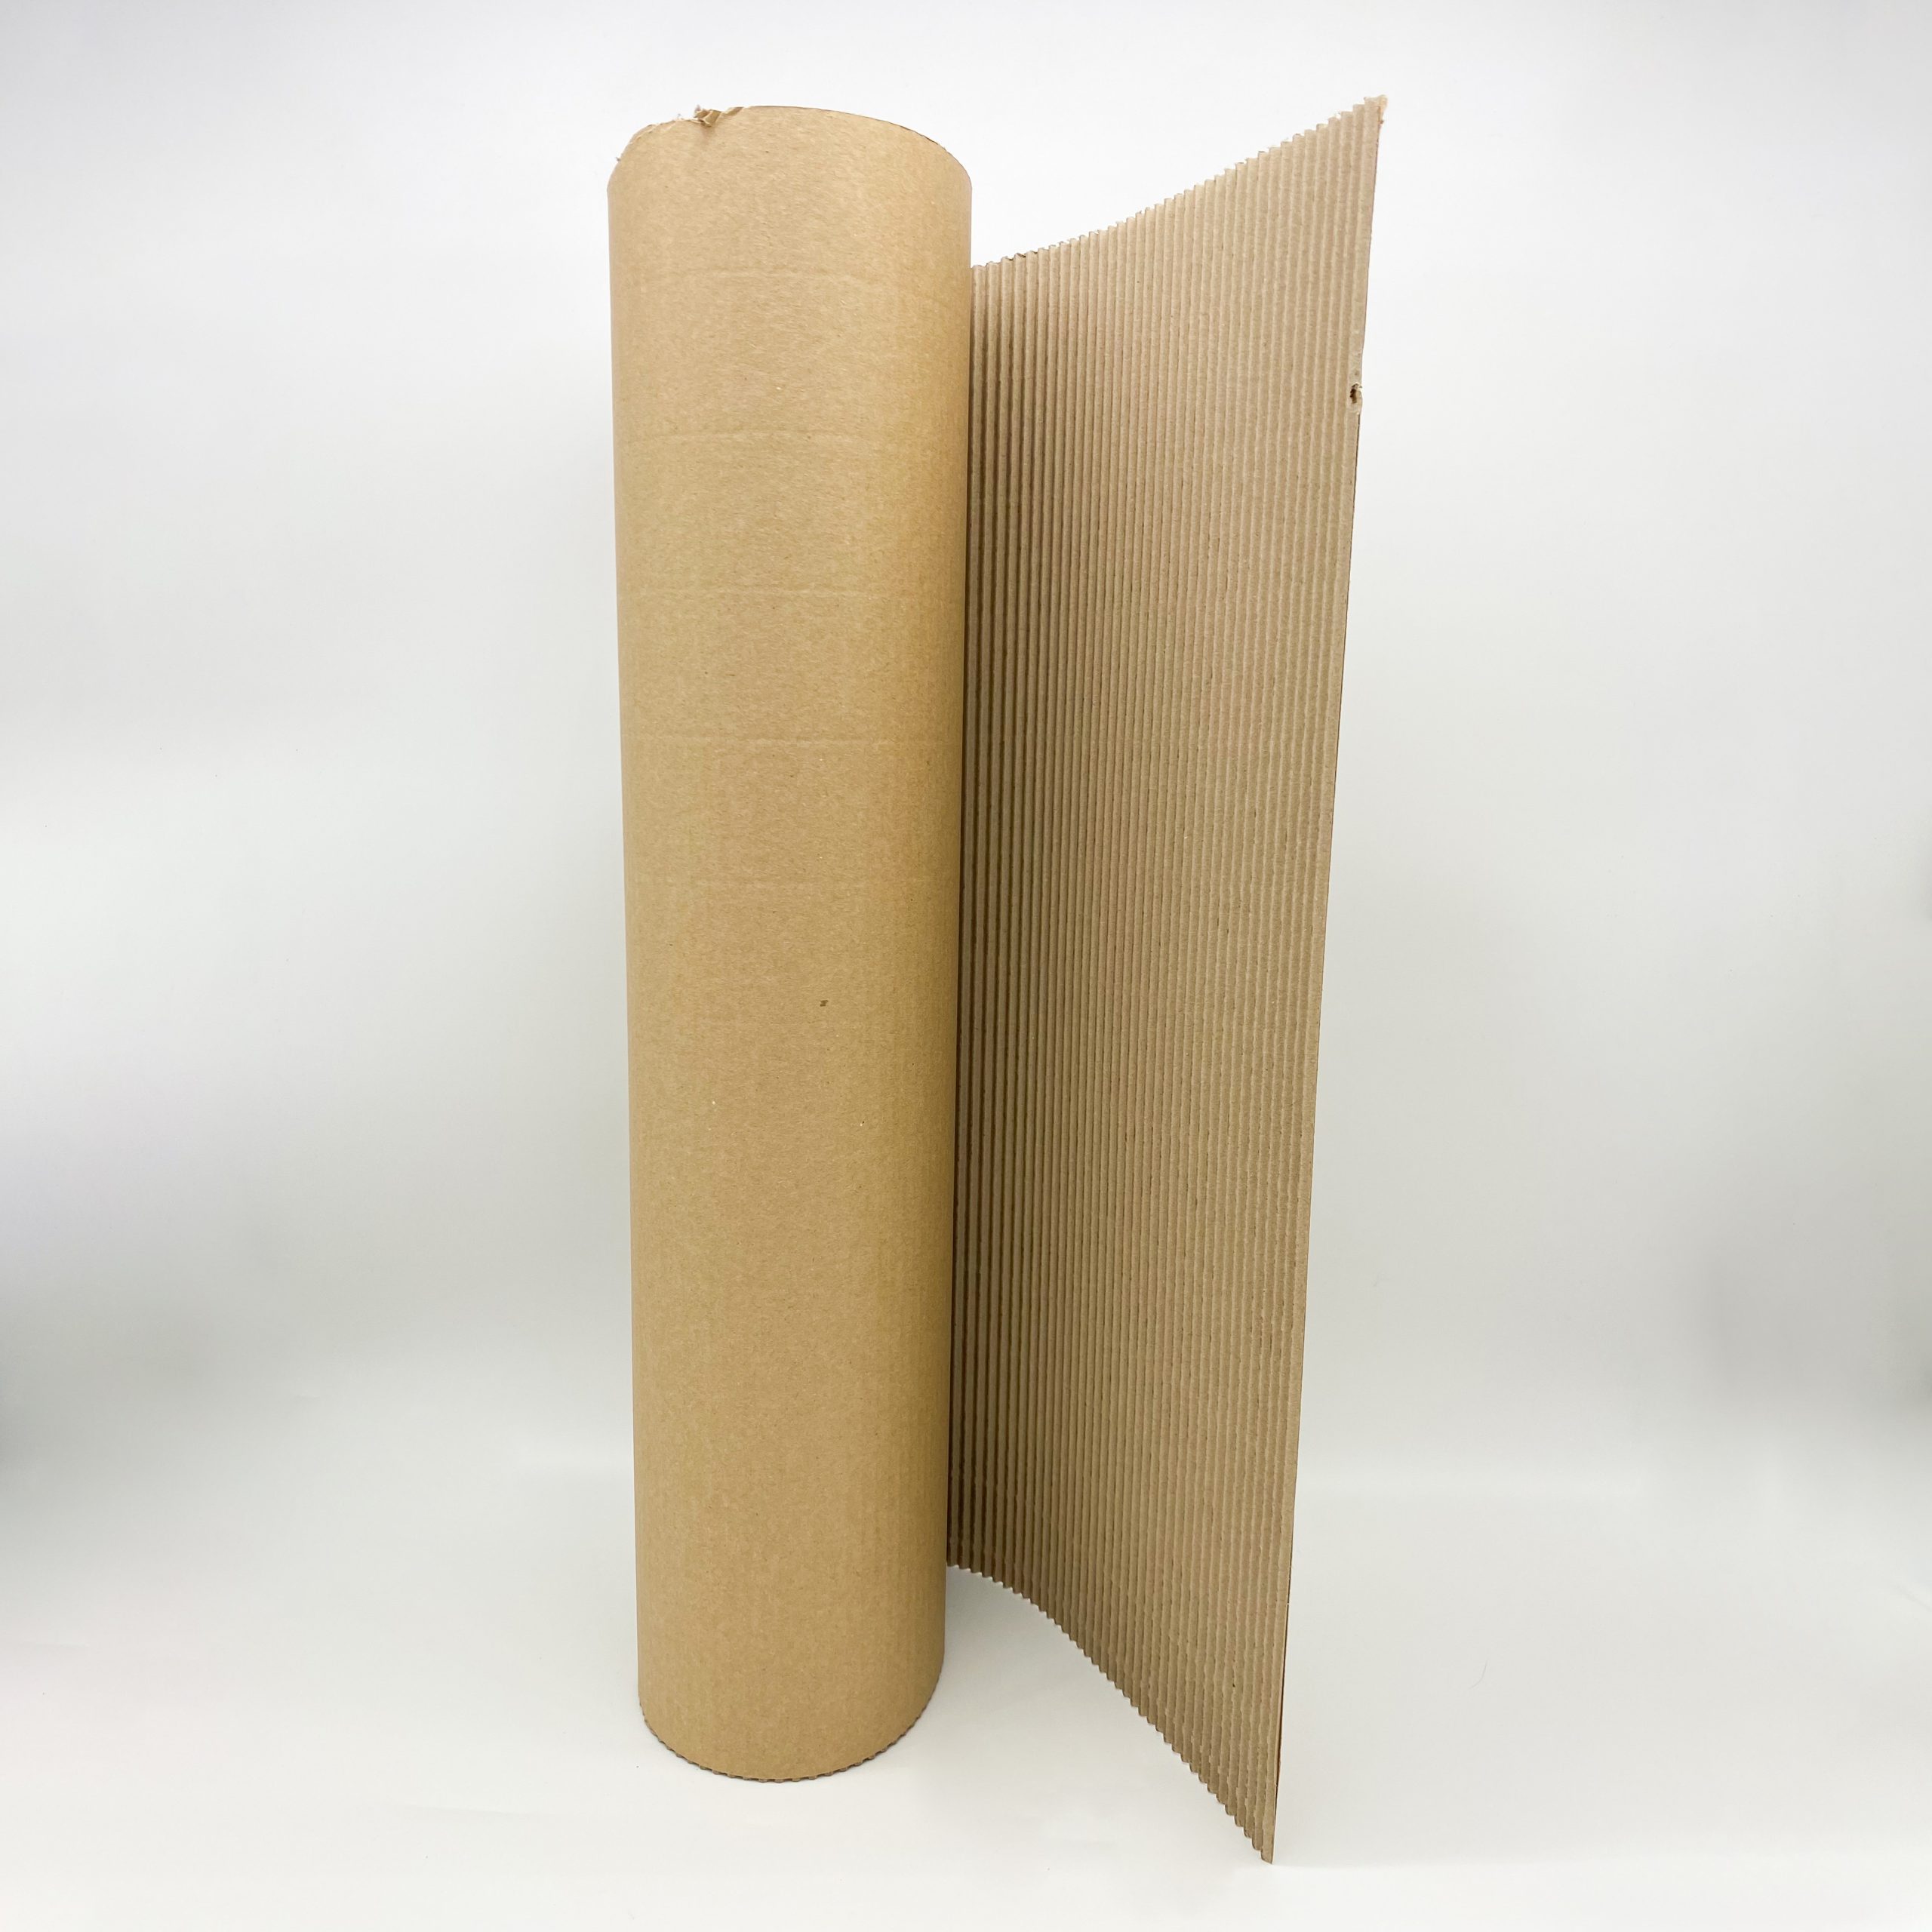 Cartón ondulado para embalaje - Anper